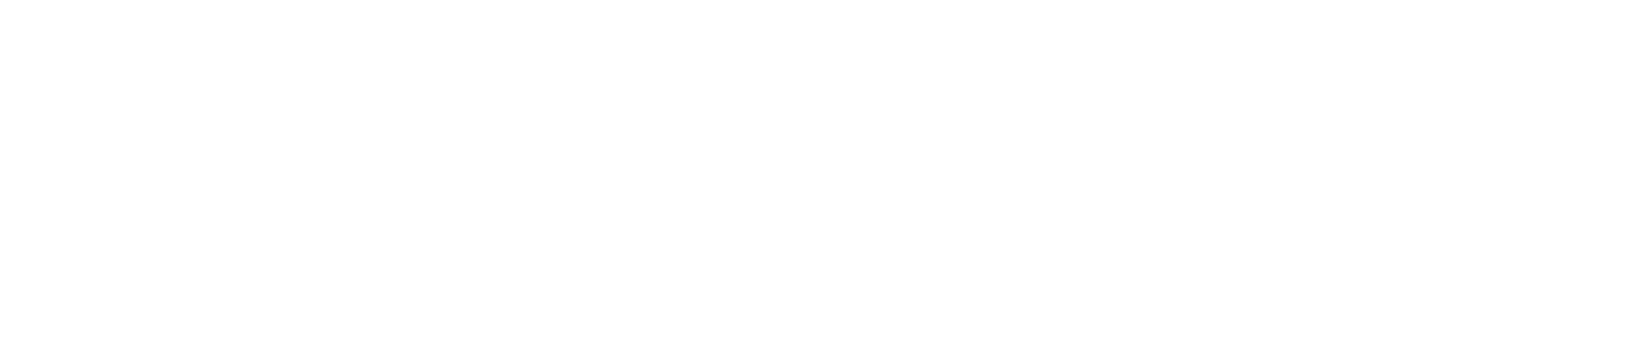 Teledyne logo large for dark backgrounds (transparent PNG)